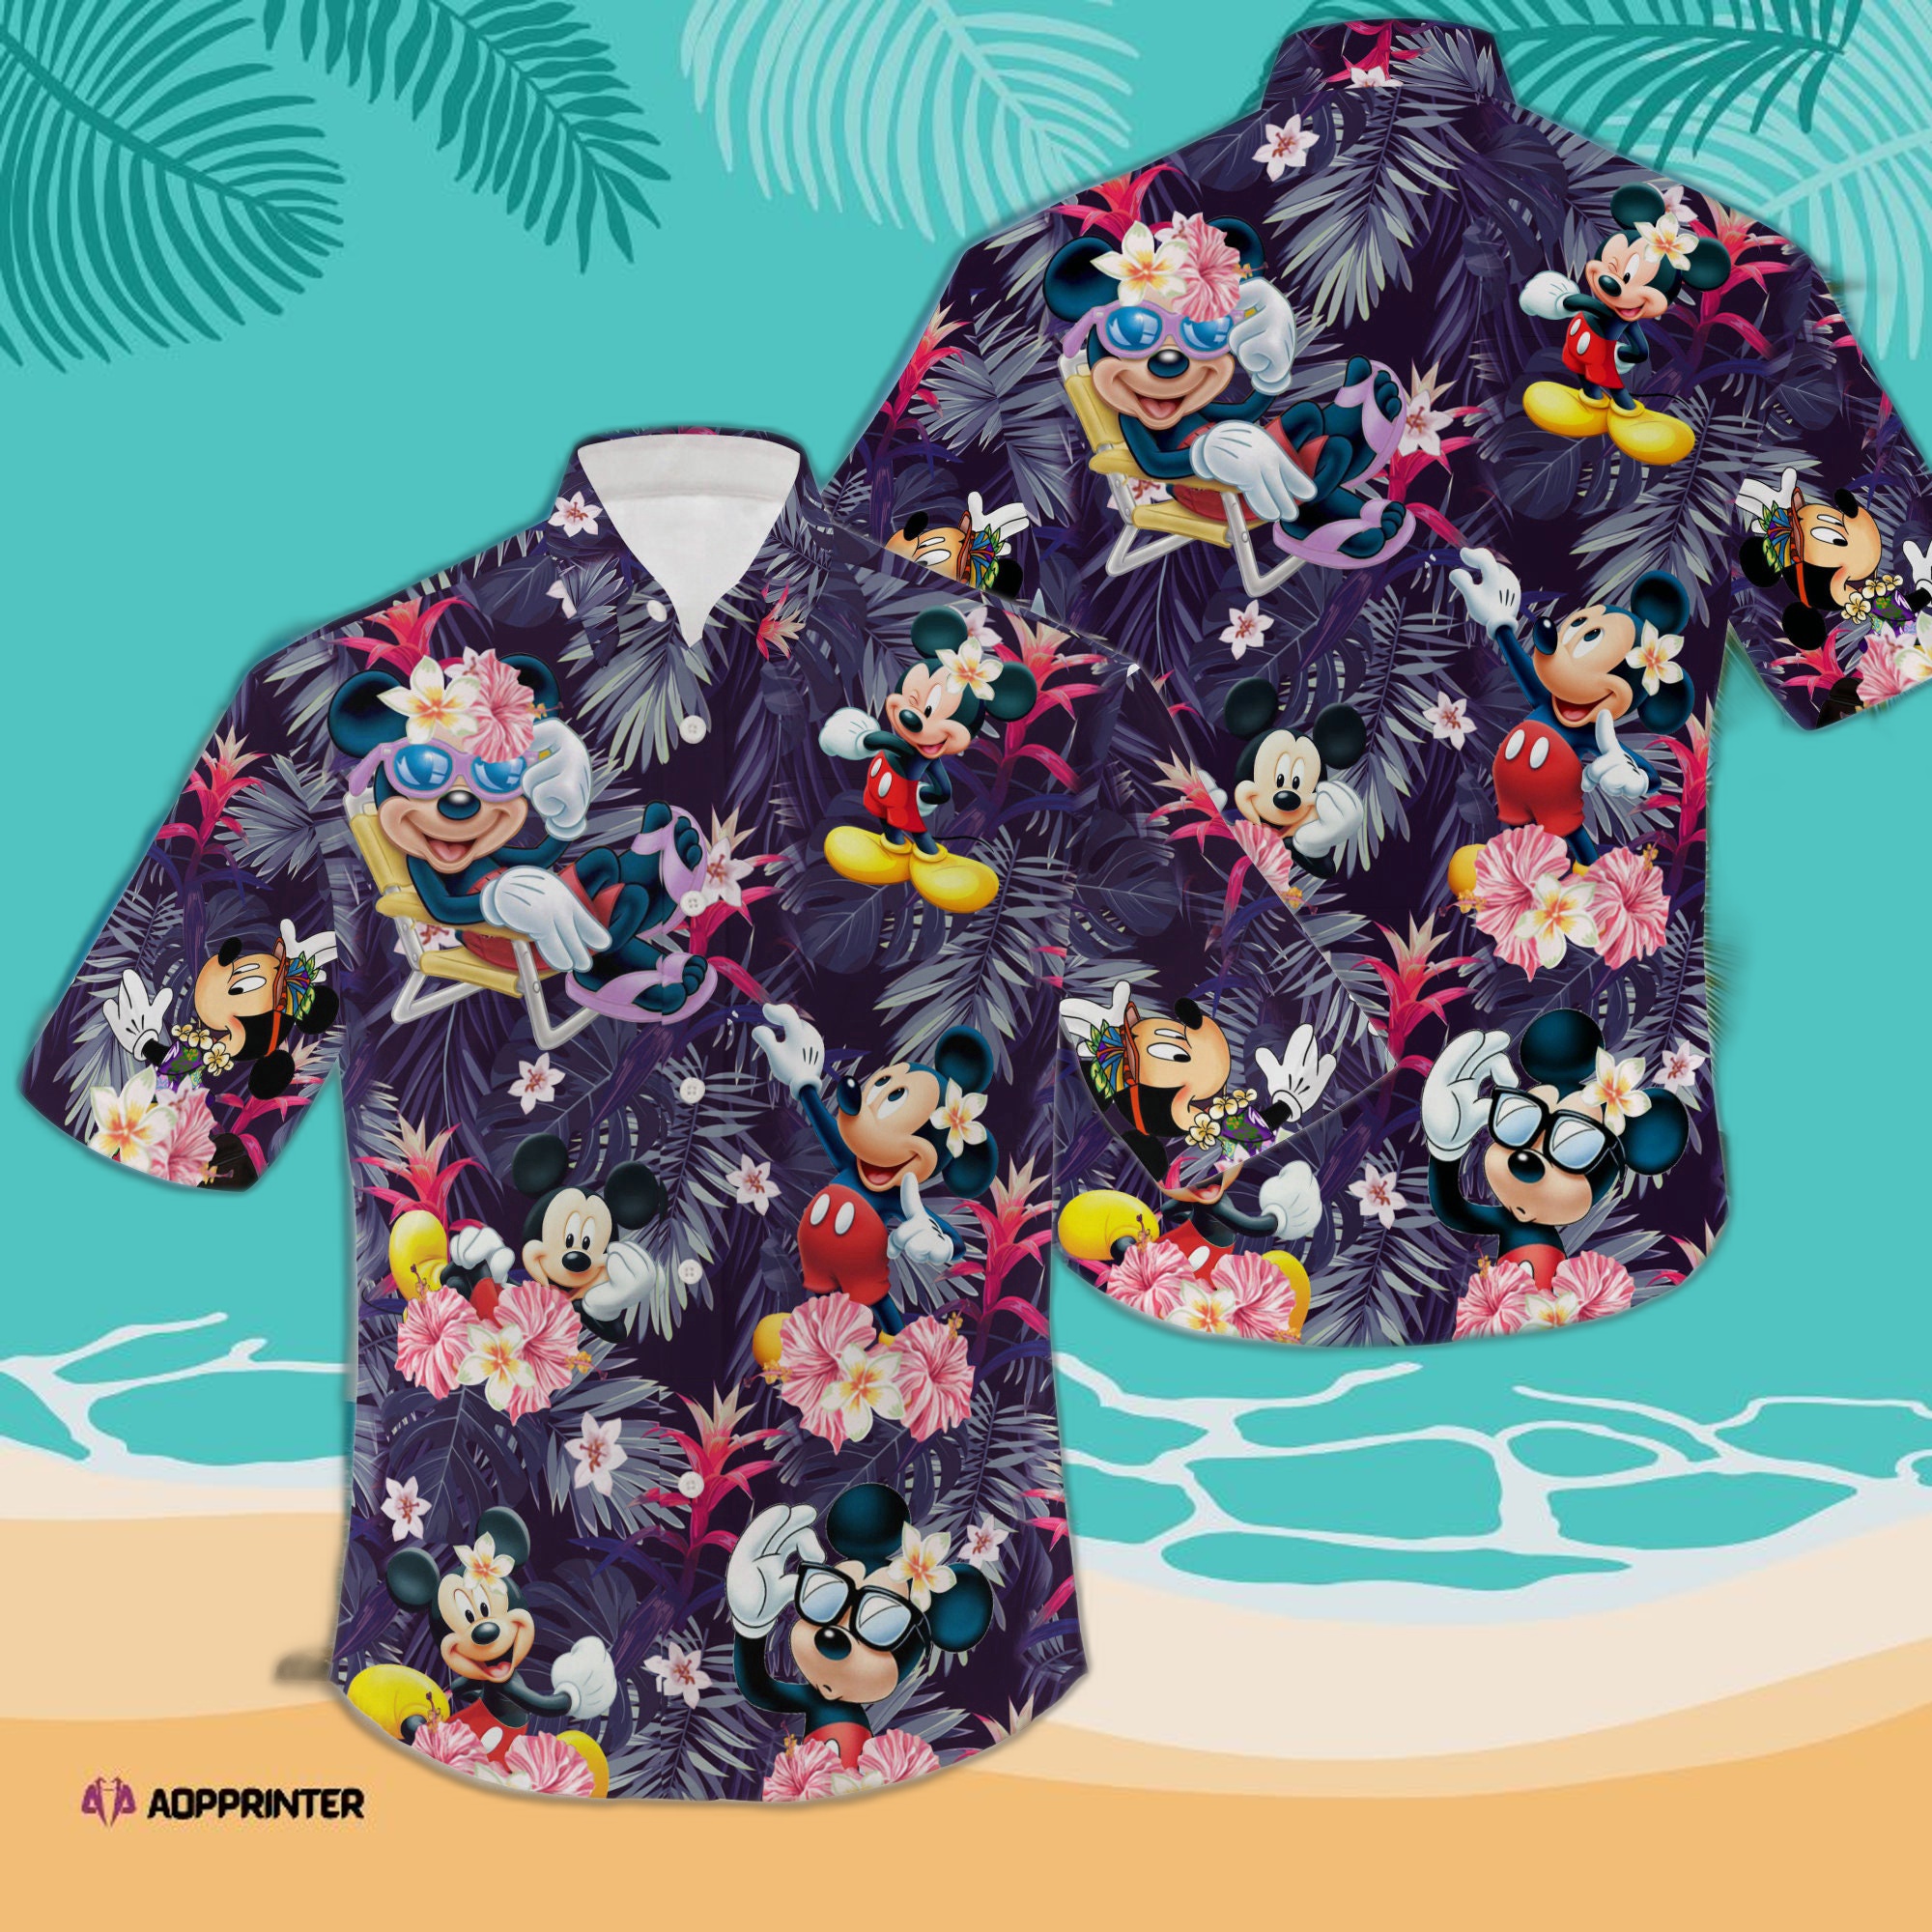 Cool Mickey 3D All Over Print Summer Vacation Hawaiian Shirt Hot Holiday